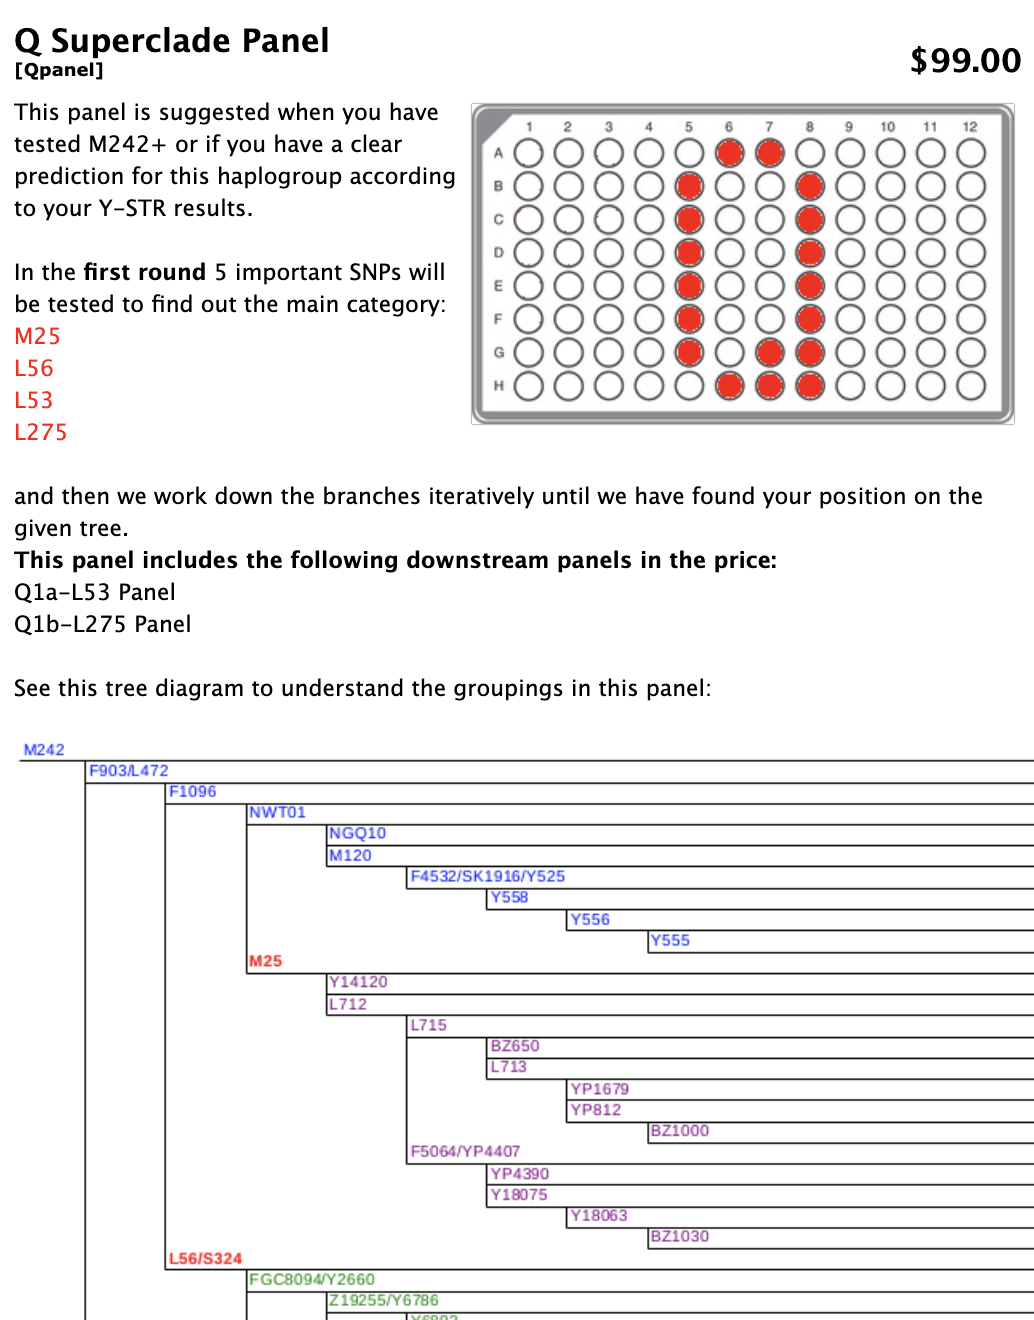 Detalhes do painel Q Superclade apresentando um diagrama de um painel com vários círculos coloridos de vermelho. Na parte inferior, um diagrama em árvore que explica os agrupamentos no painel